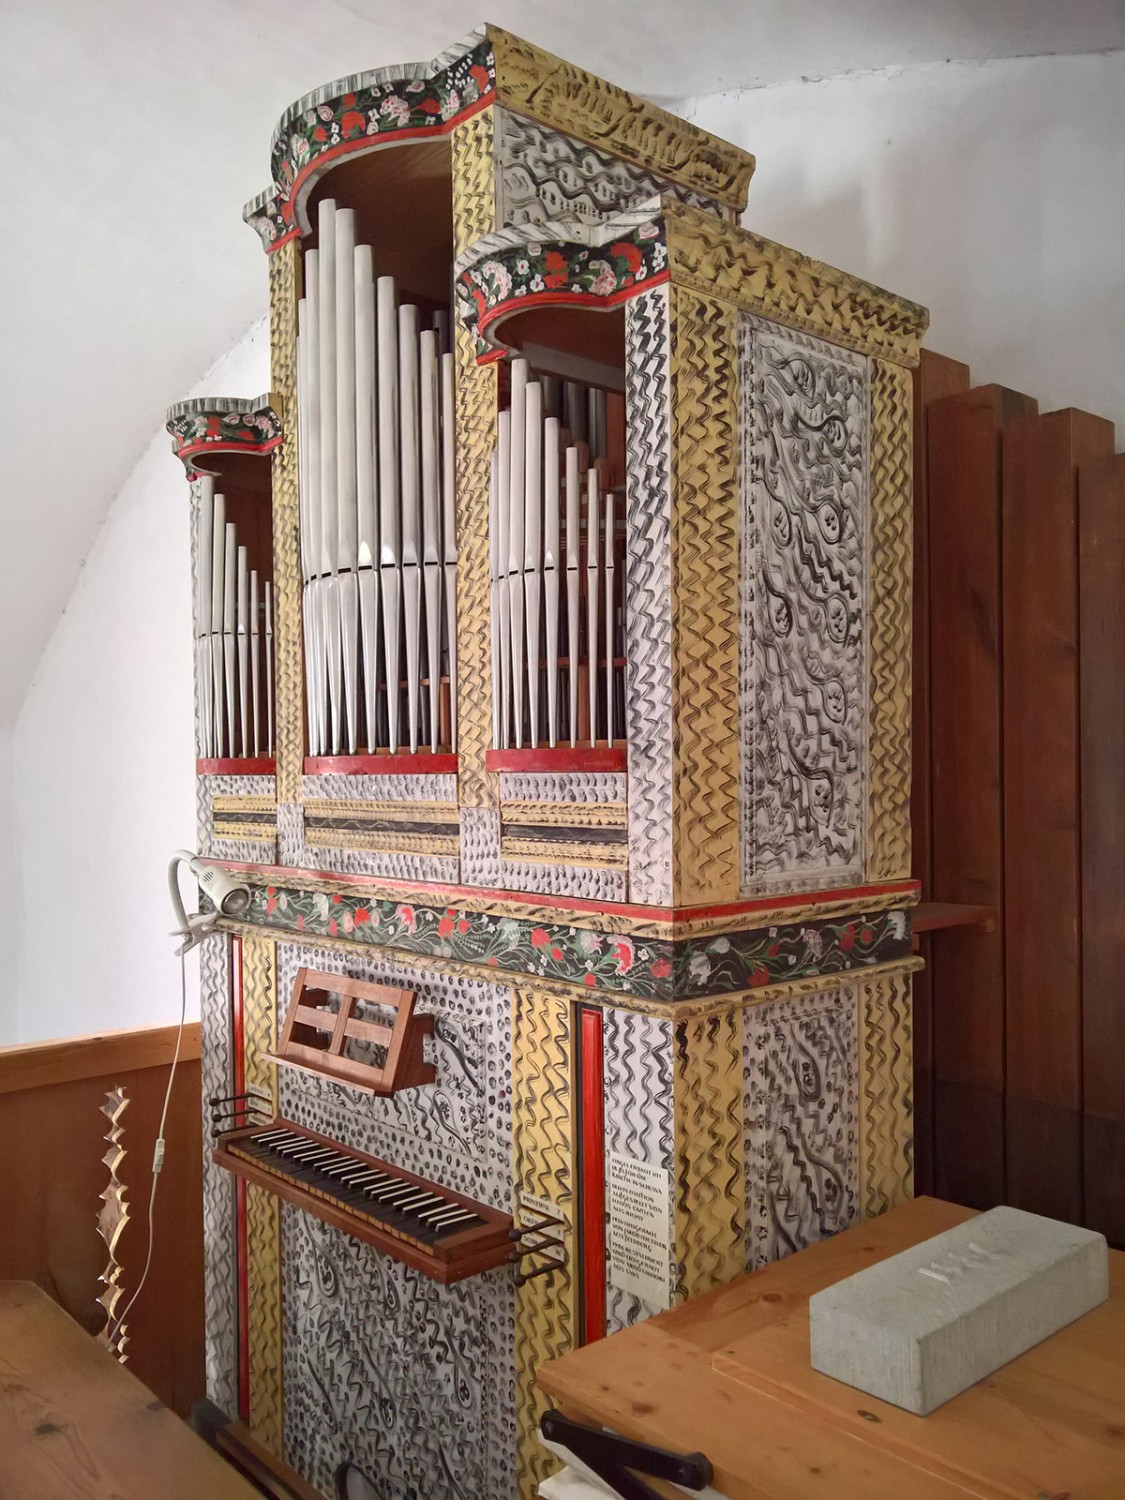 L’orgue de l’église de Mathon, orné de peintures paysannes.